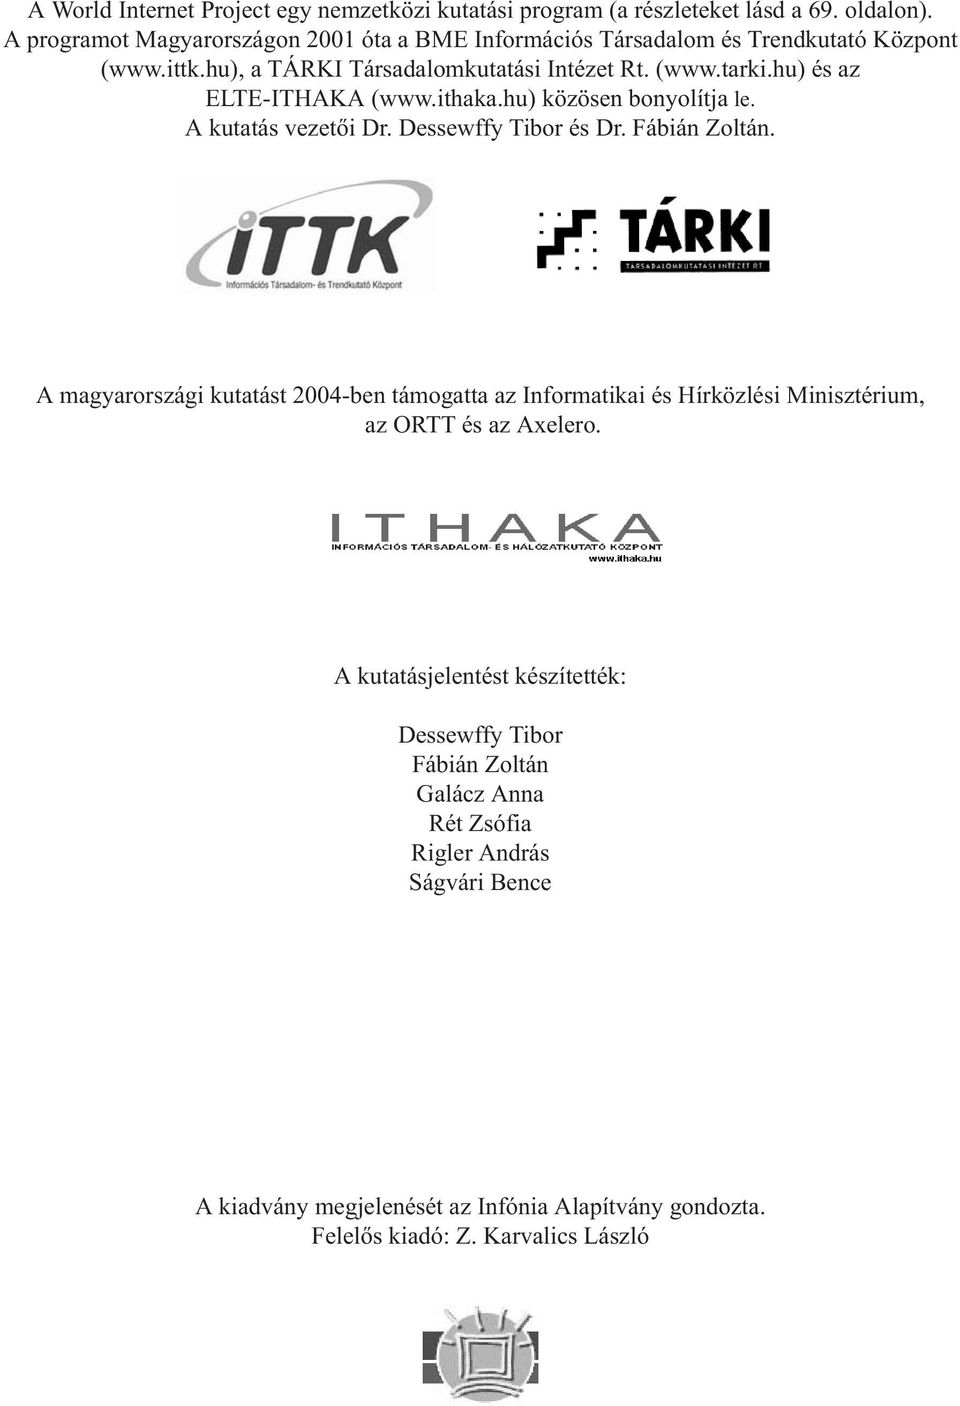 hu) és az ELTE-ITHAKA (www.ithaka.hu) közösen bonyolítja le. A kutatás vezetõi Dr. Dessewffy Tibor és Dr. Fábián Zoltán.